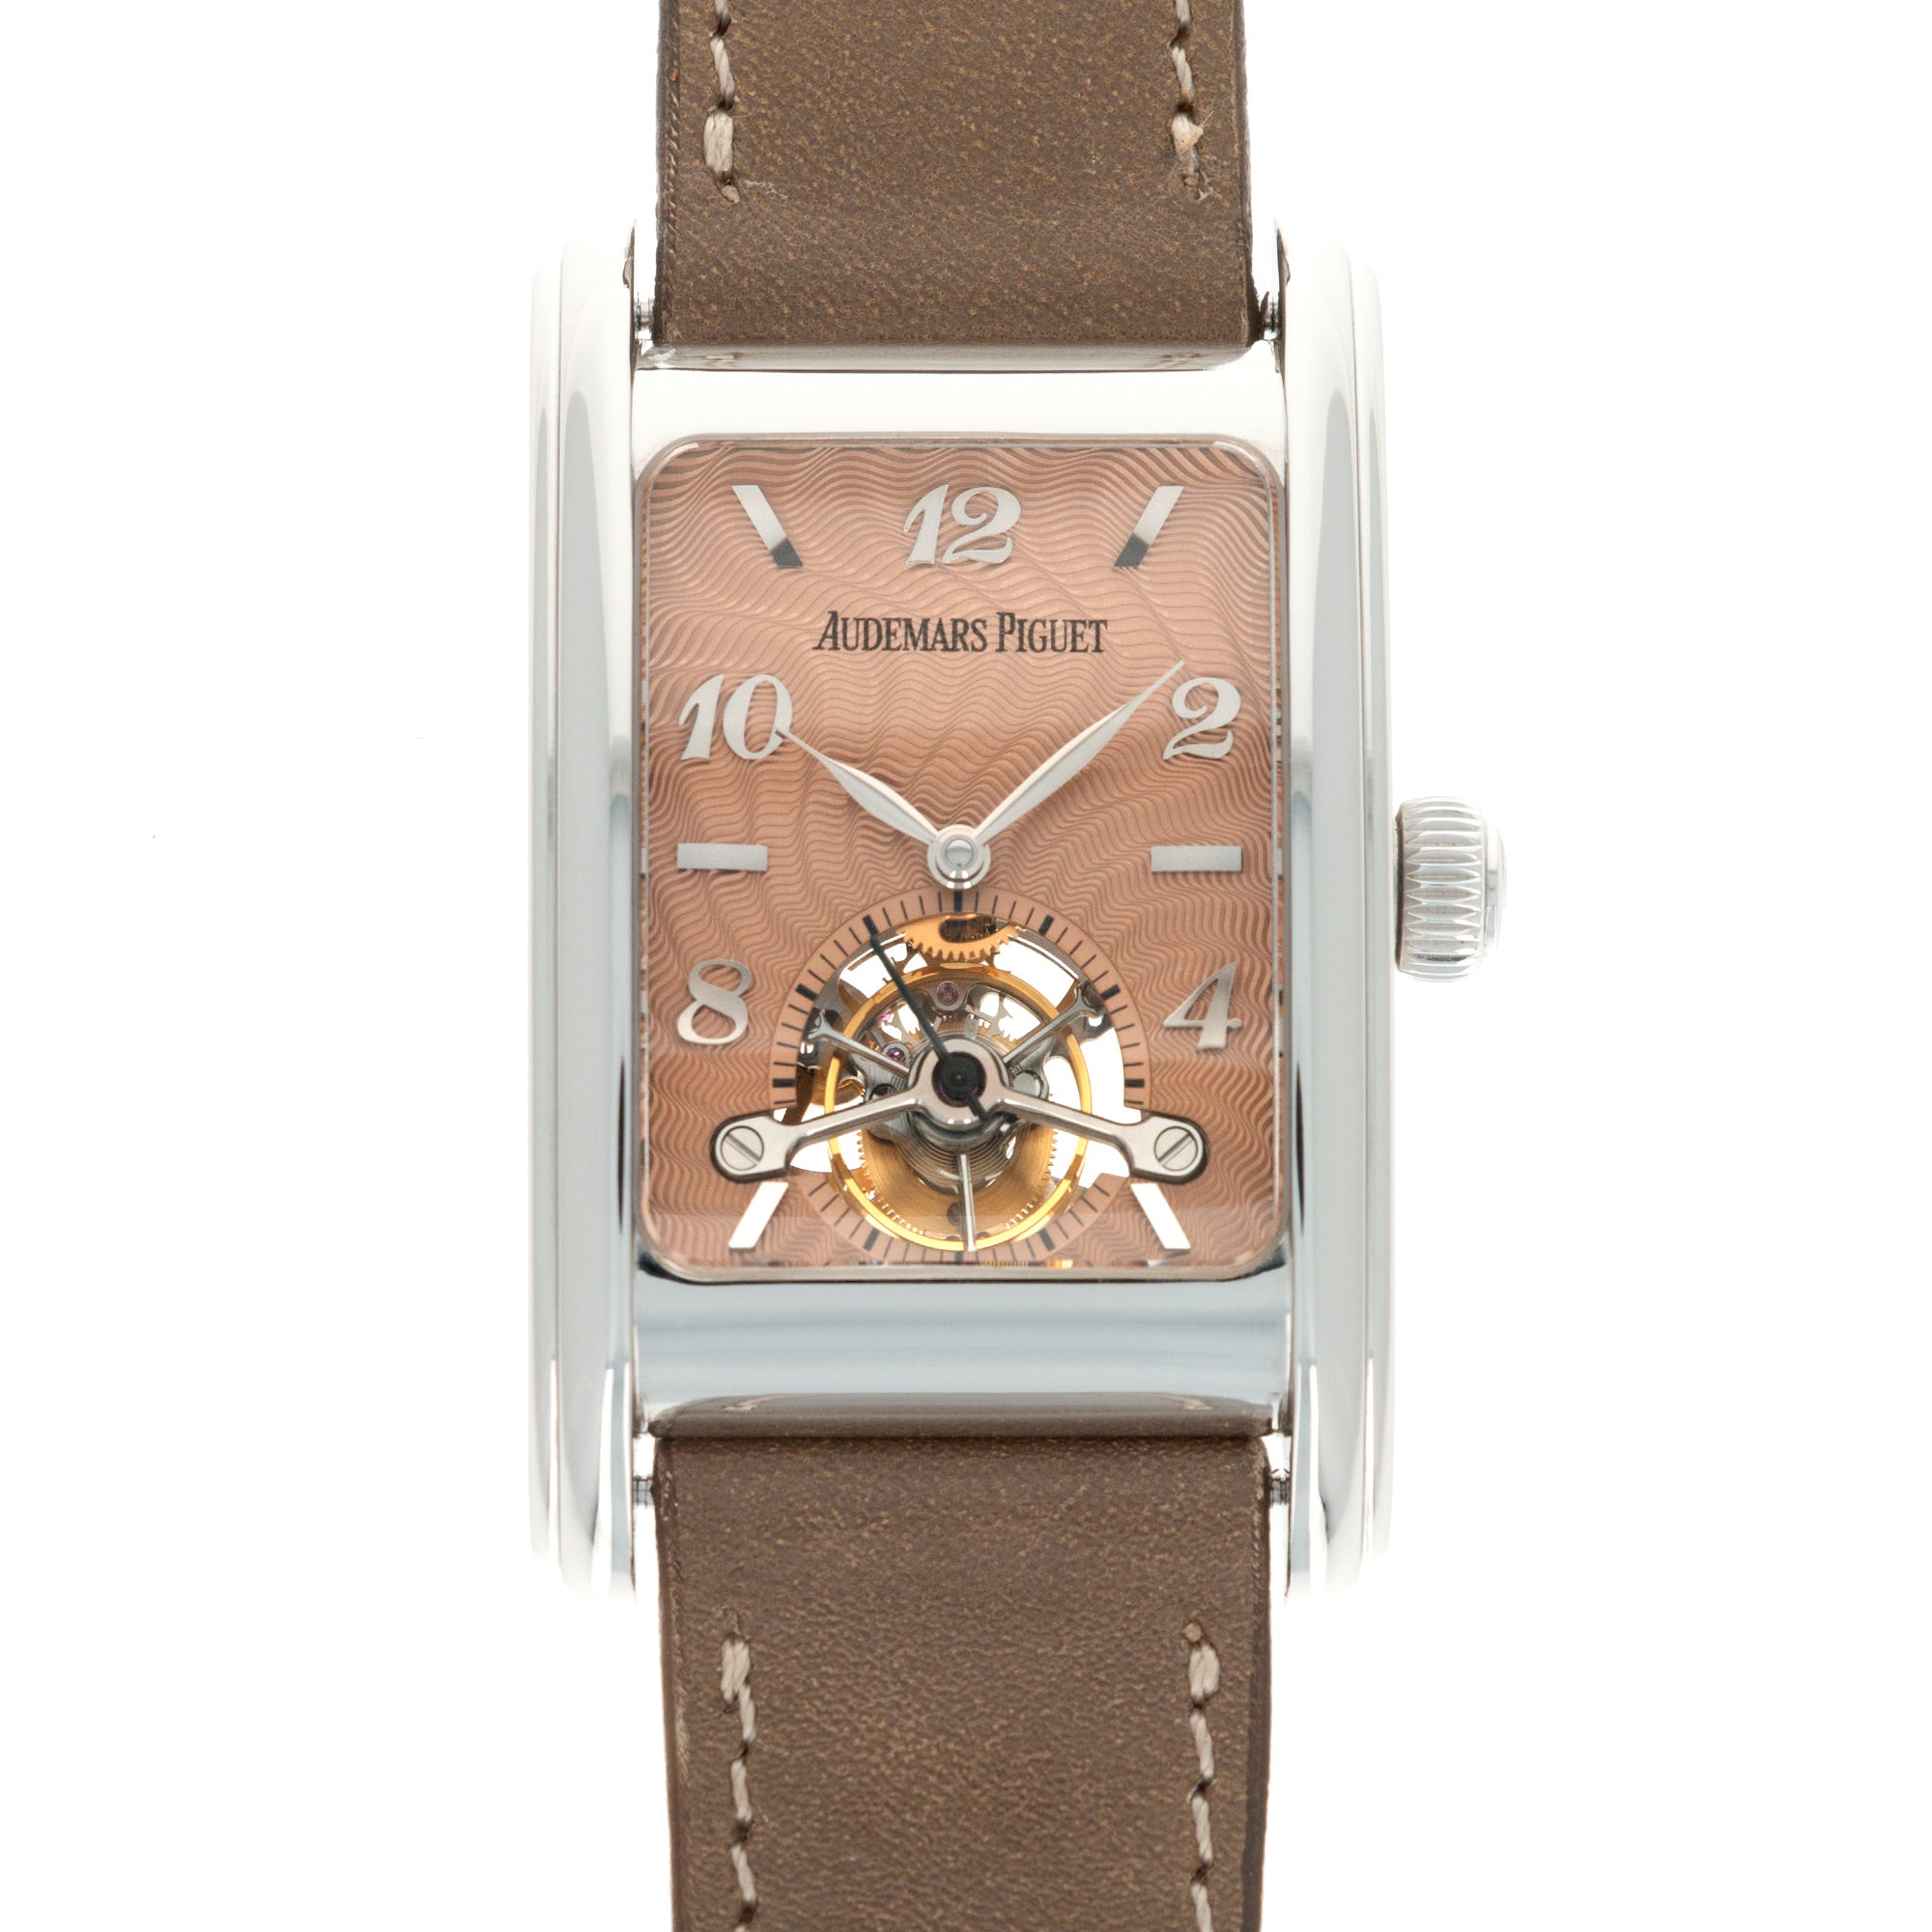 Audemars Piguet - Audemars Piguet Platinum Tourbillon Salmon Dial Watch - The Keystone Watches